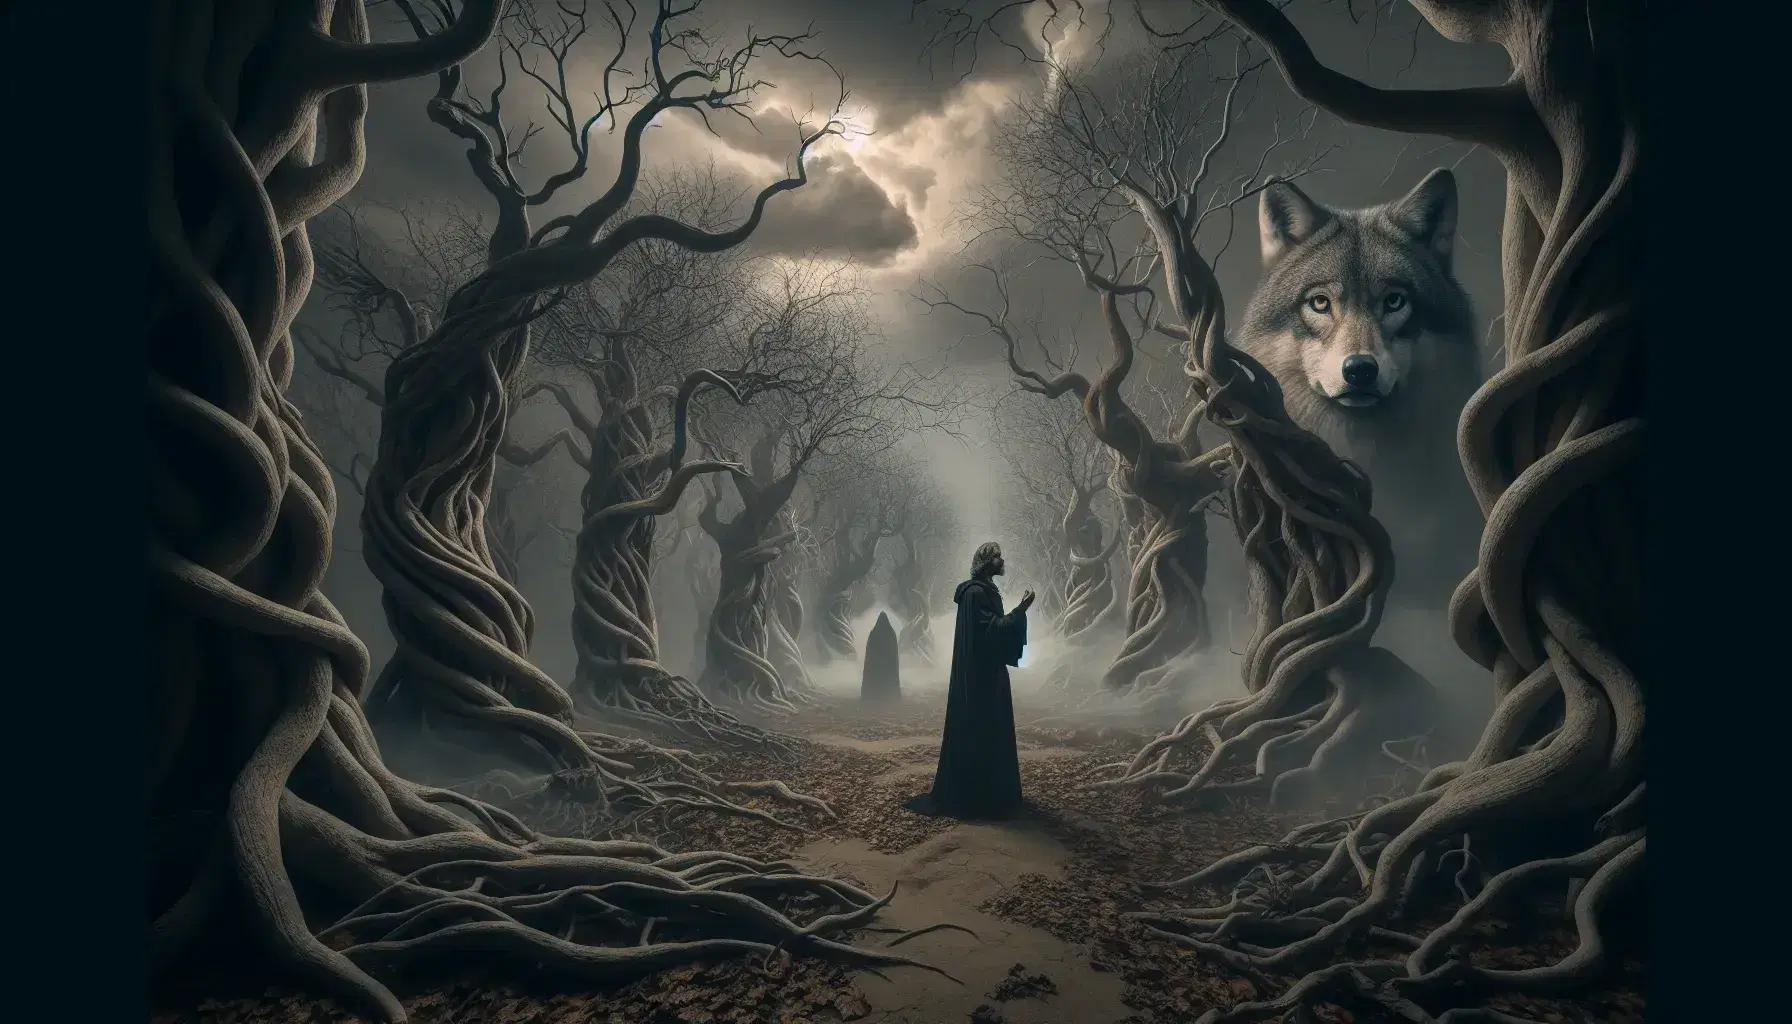 Scena nebbiosa e tenebrosa di una foresta con Dante Alighieri al centro, lupo grigio a sinistra e figura sfocata a destra.